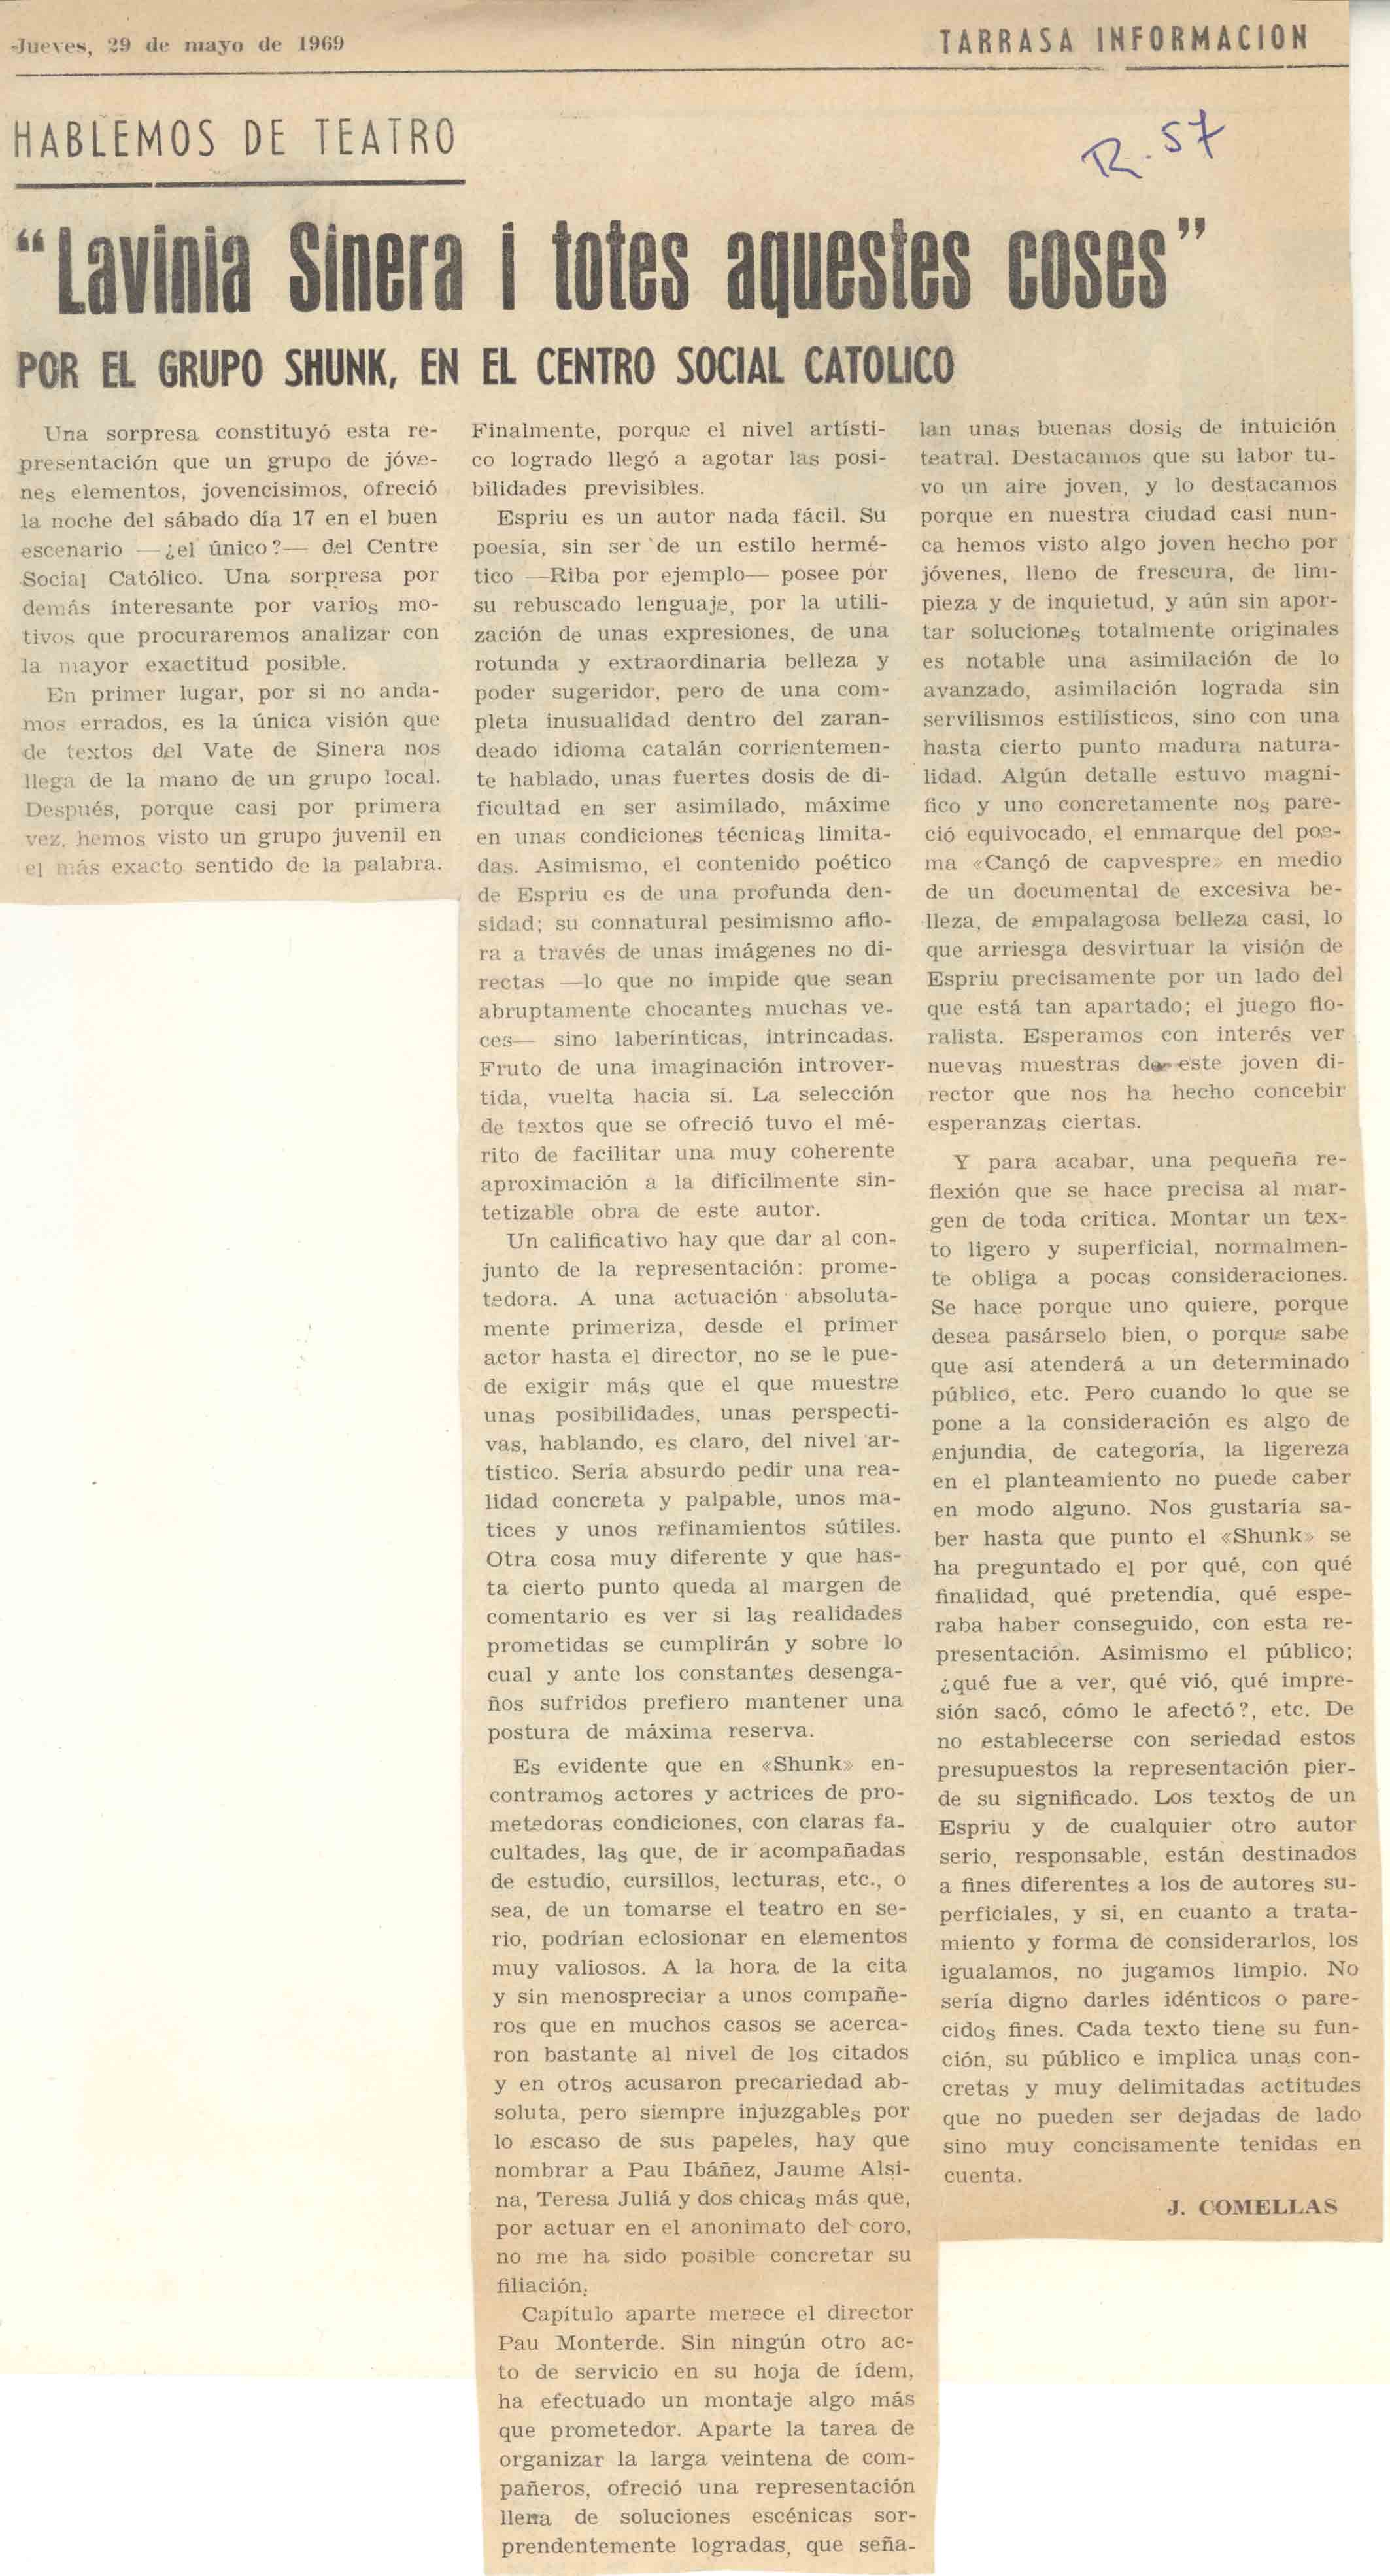 Crítica. J. Comellas. Tarrassa informació, 29 maig 1969